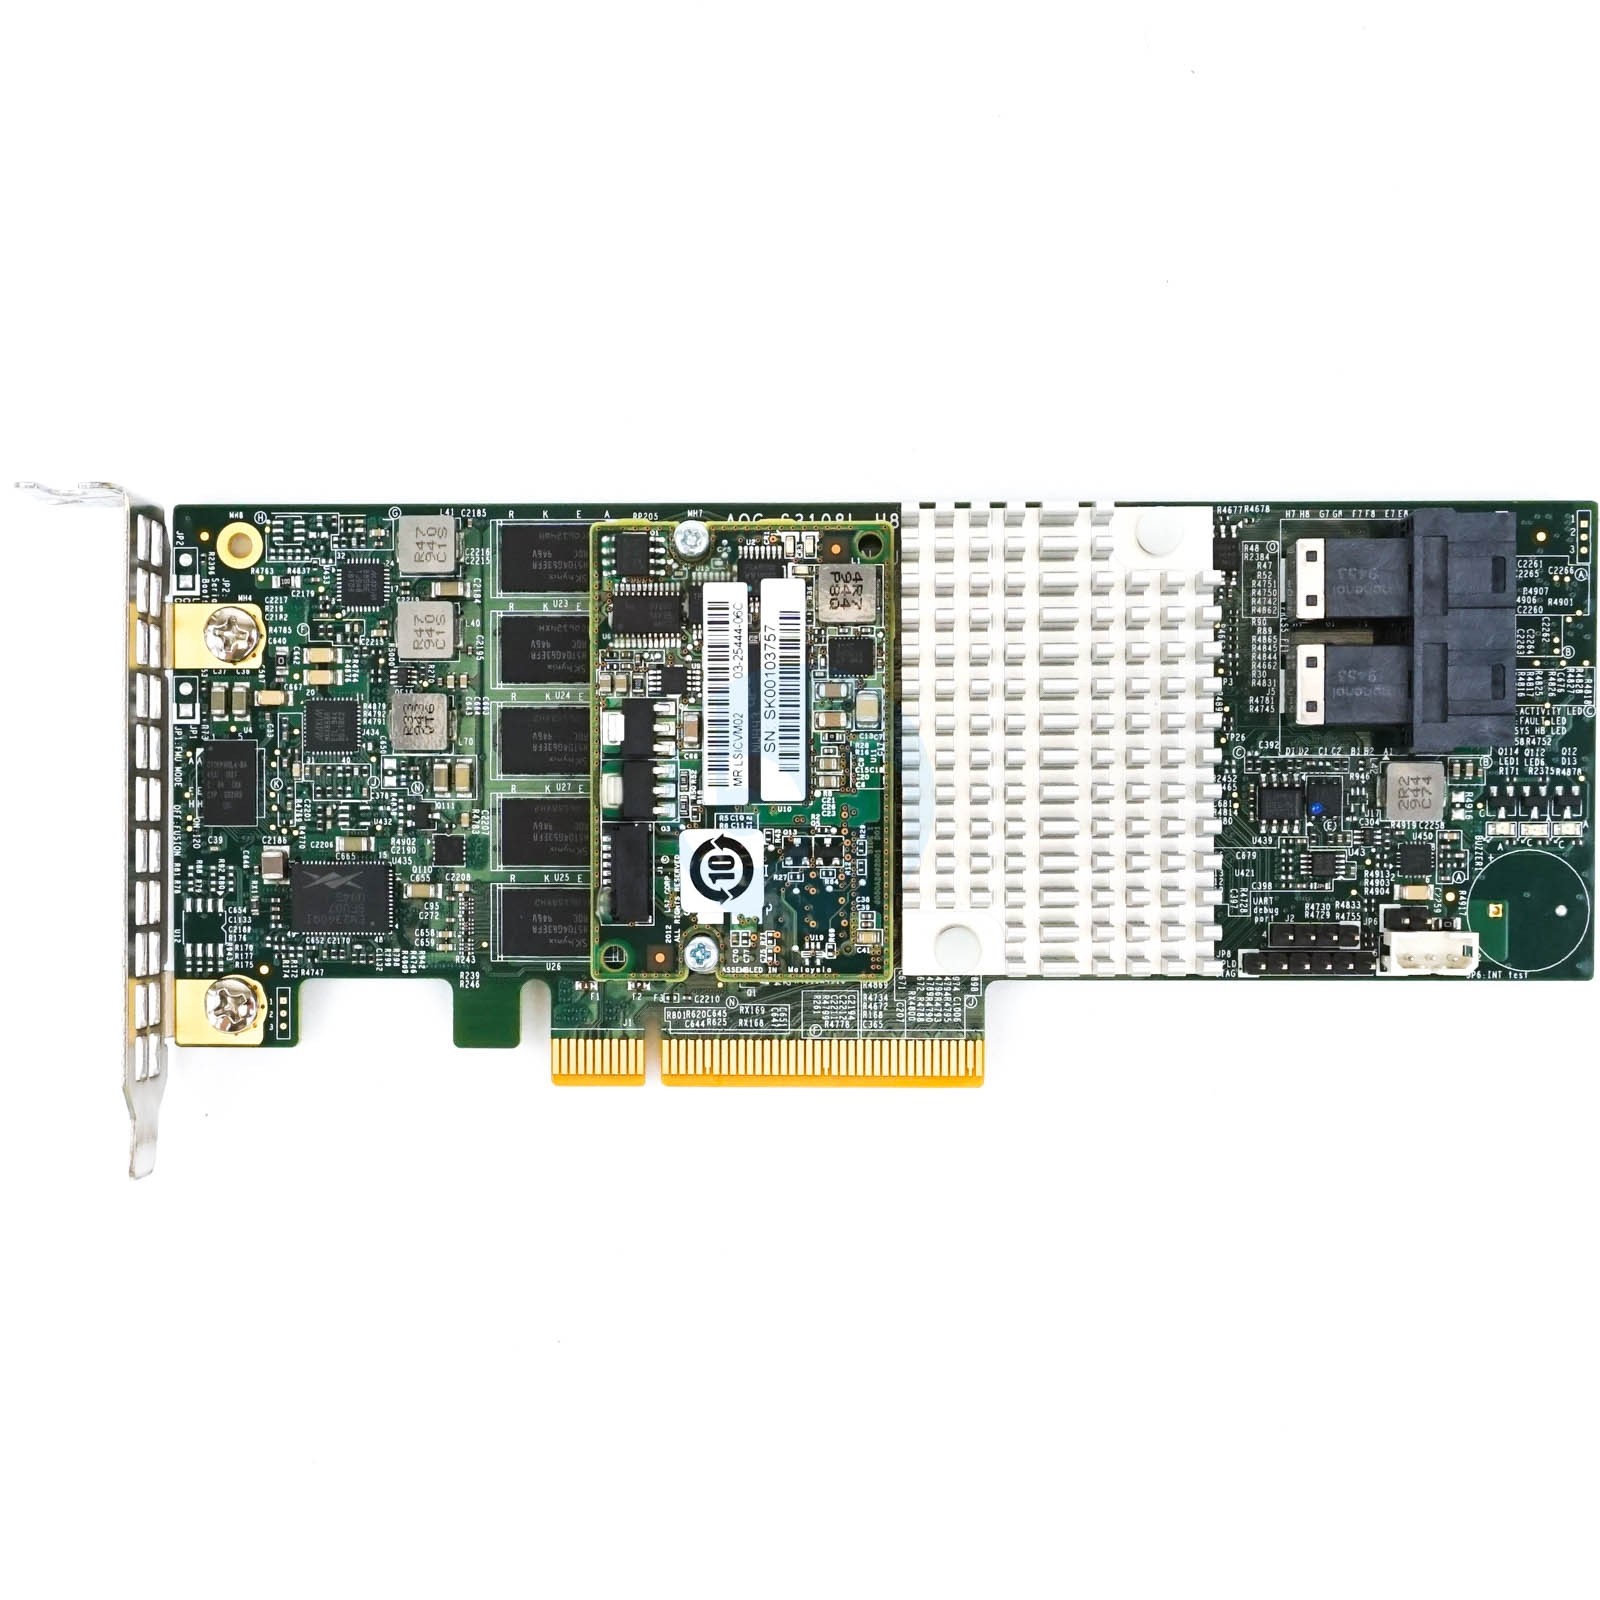 SuperMicro AOC-S3108L-H8iR 2GB - LP PCIe-x8 SAS 8-Port RAID Controller